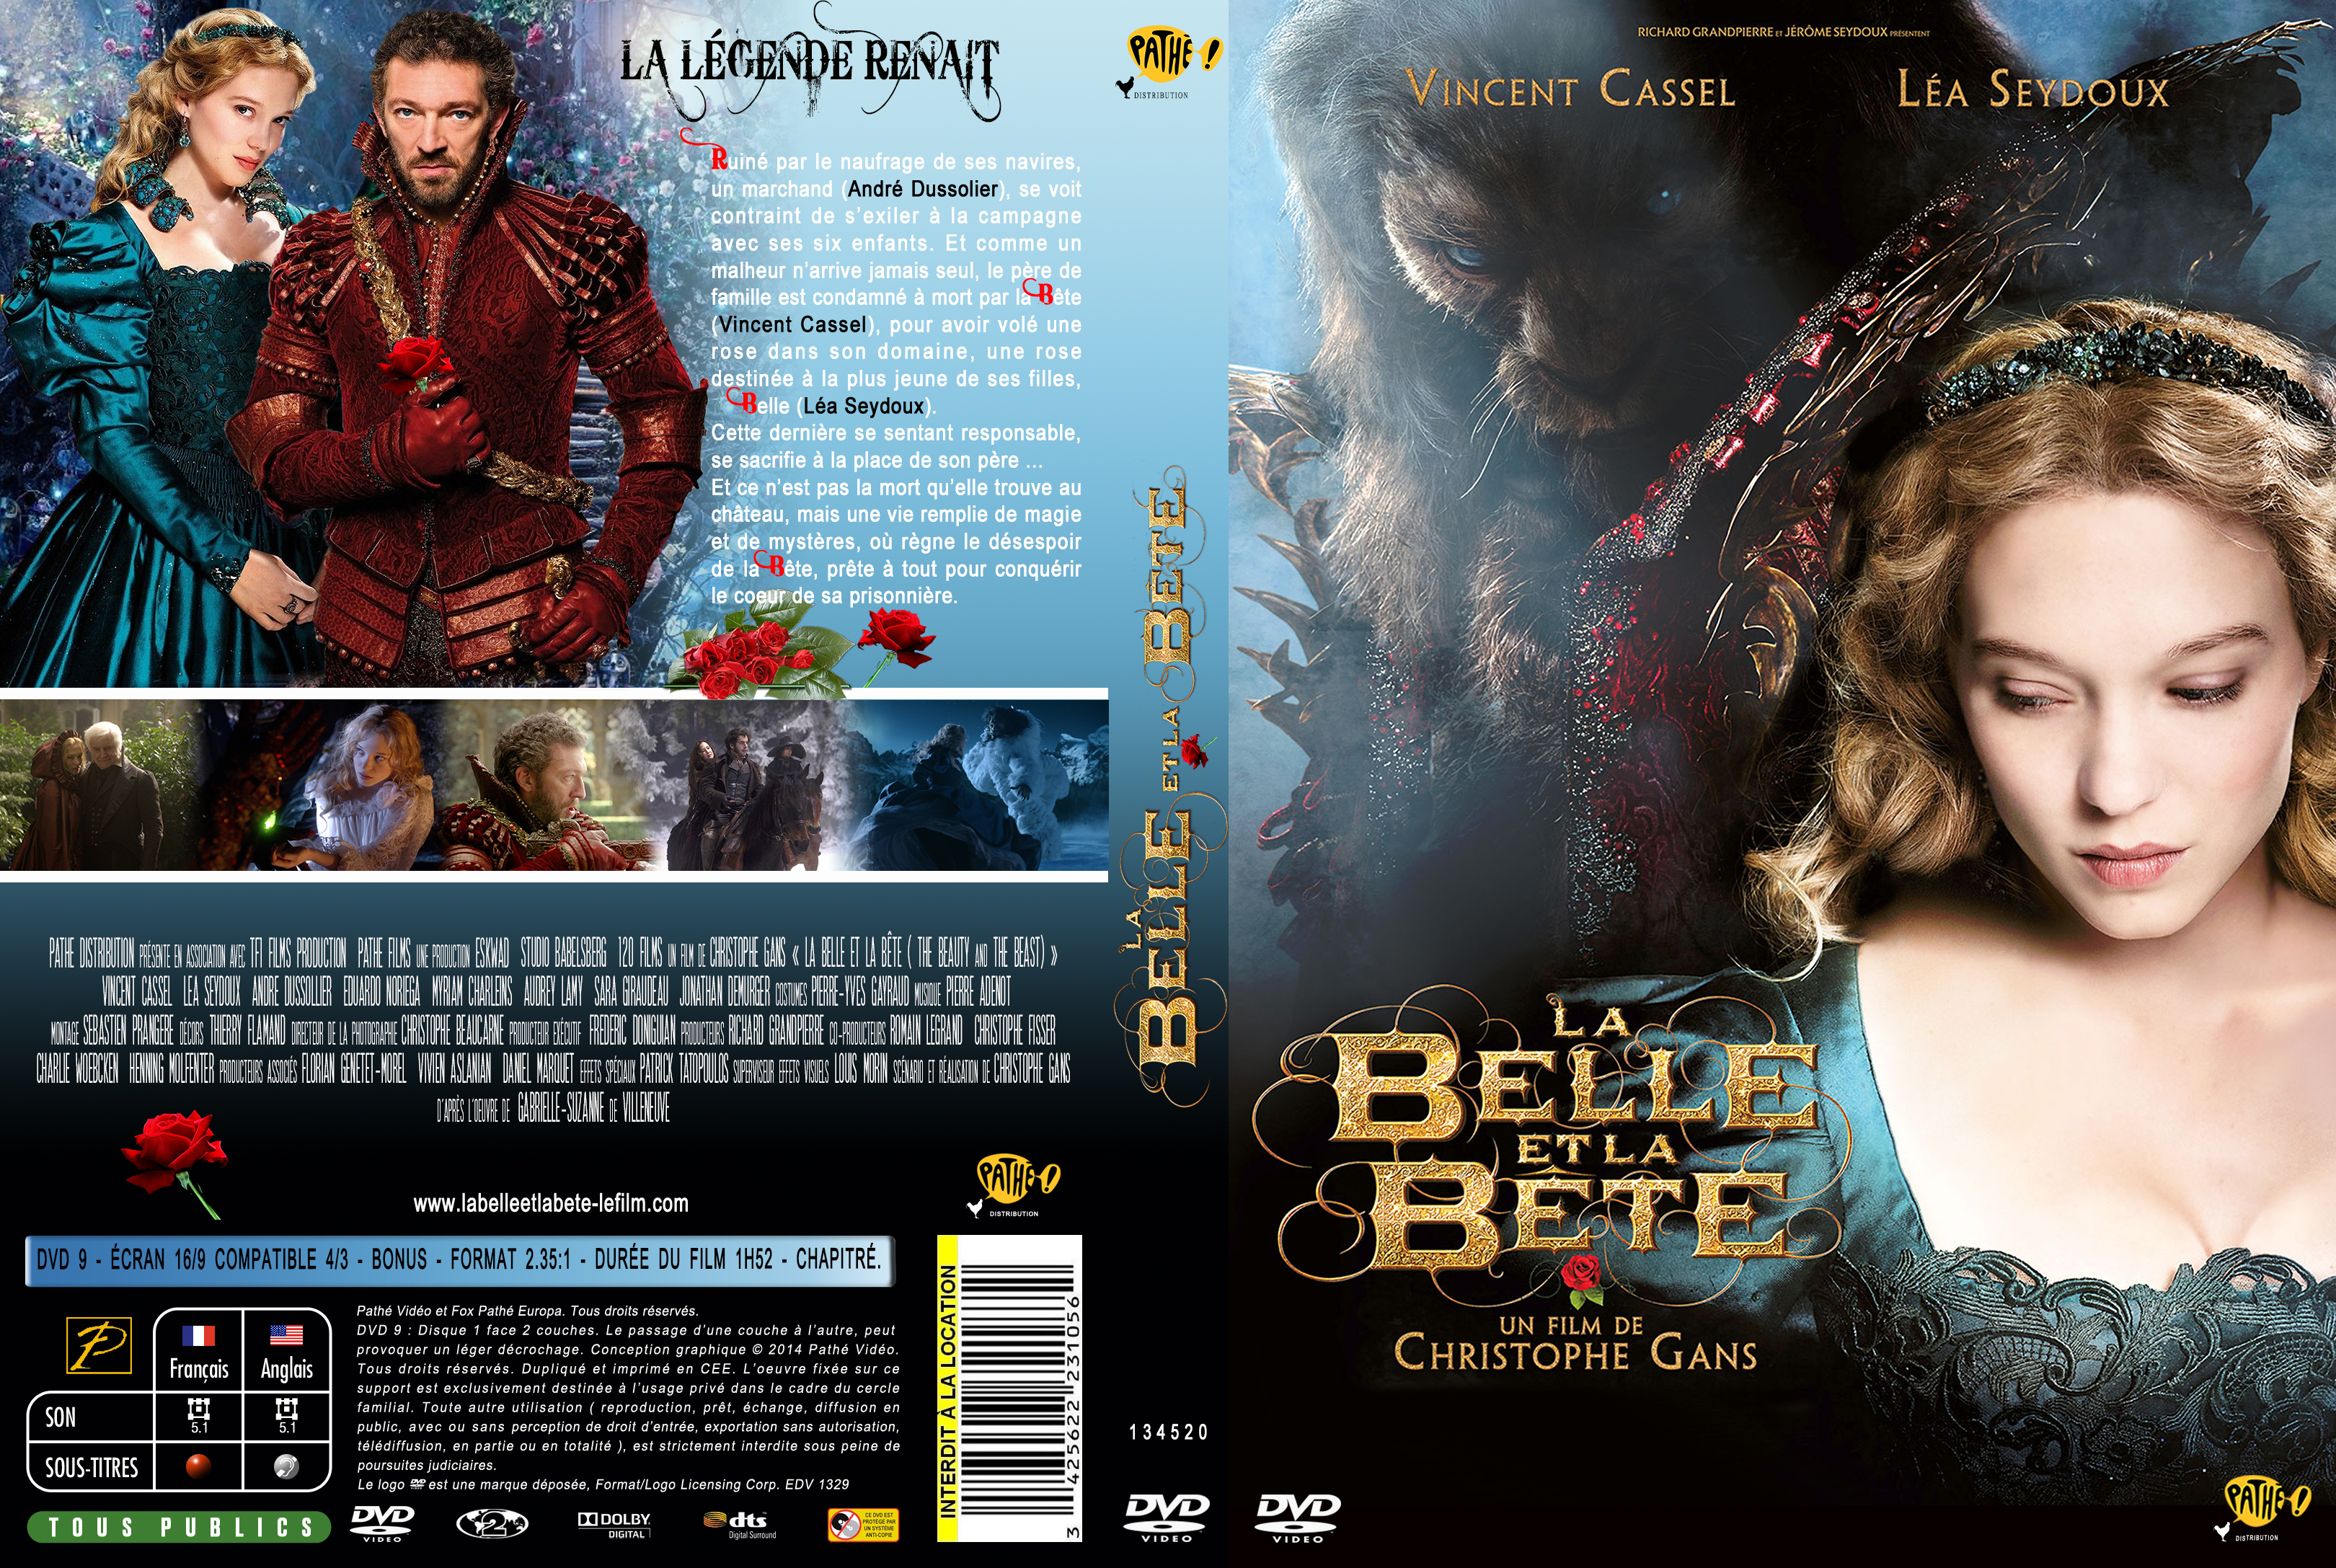 Jaquette DVD La belle et la bte (2014) custom